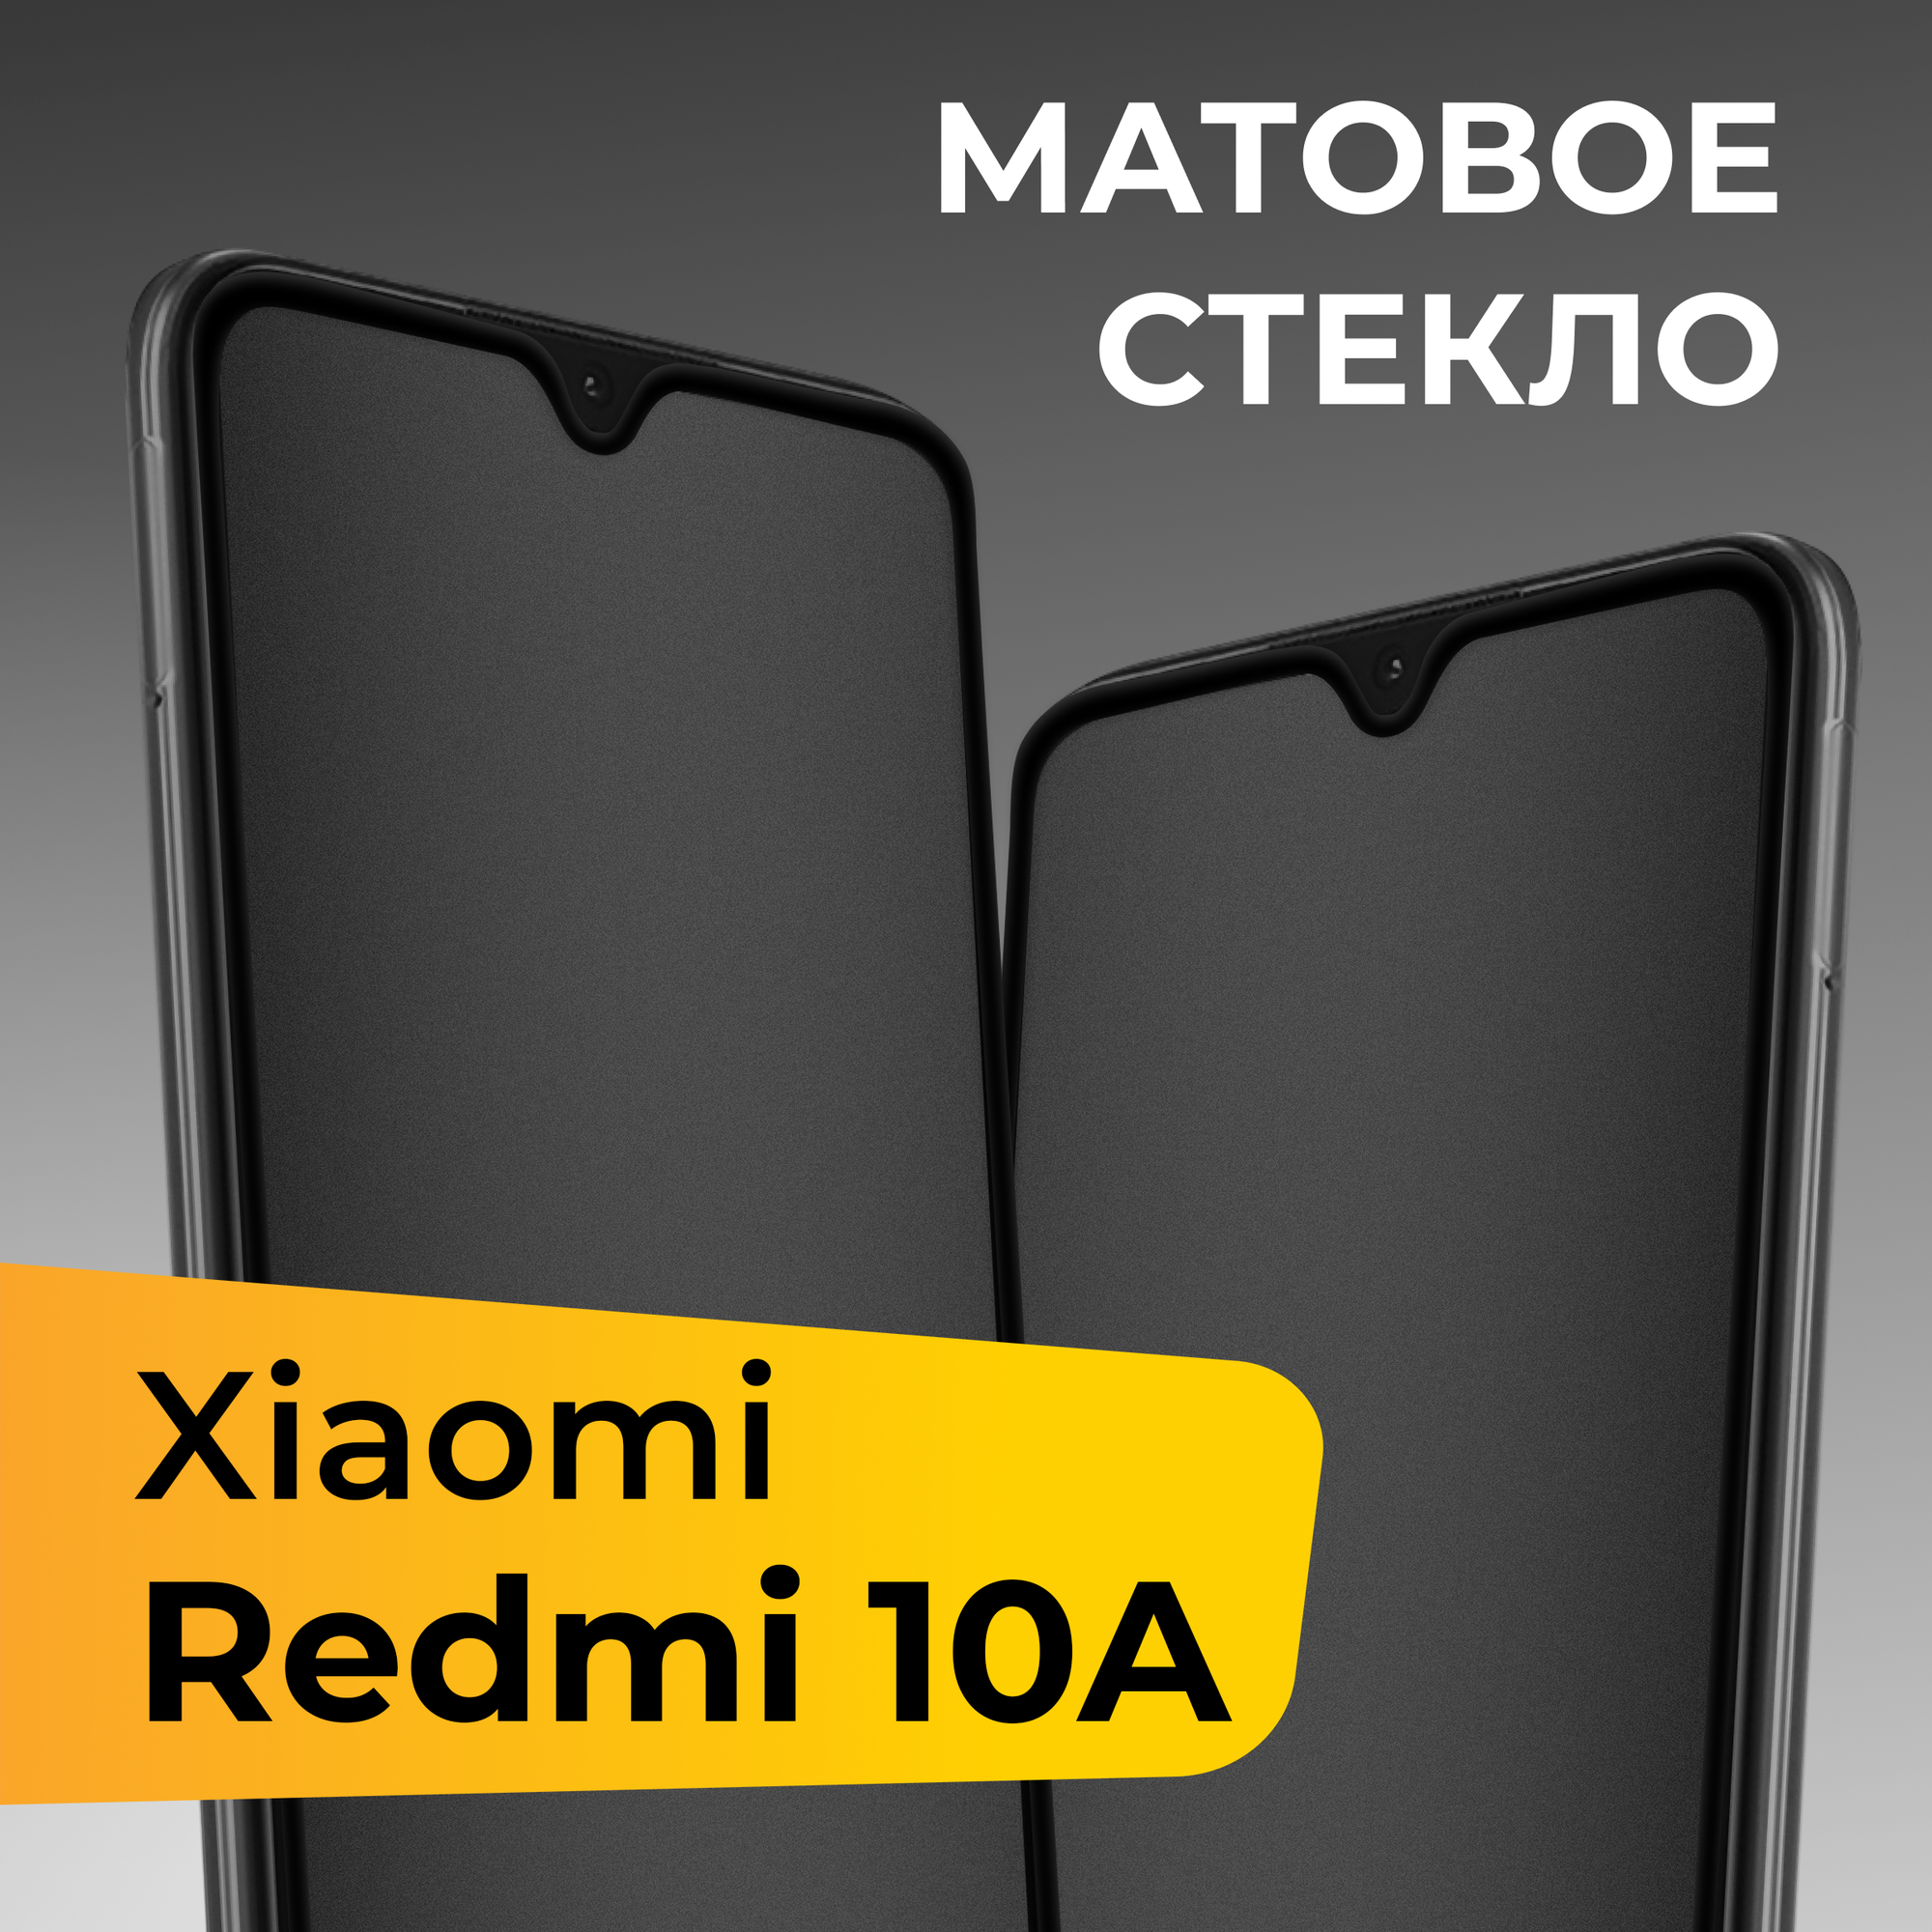 Матовое защитное стекло для телефона Xiaomi Redmi 10A / Противоударное закаленное стекло на весь экран для смартфона Сяоми Редми 10А